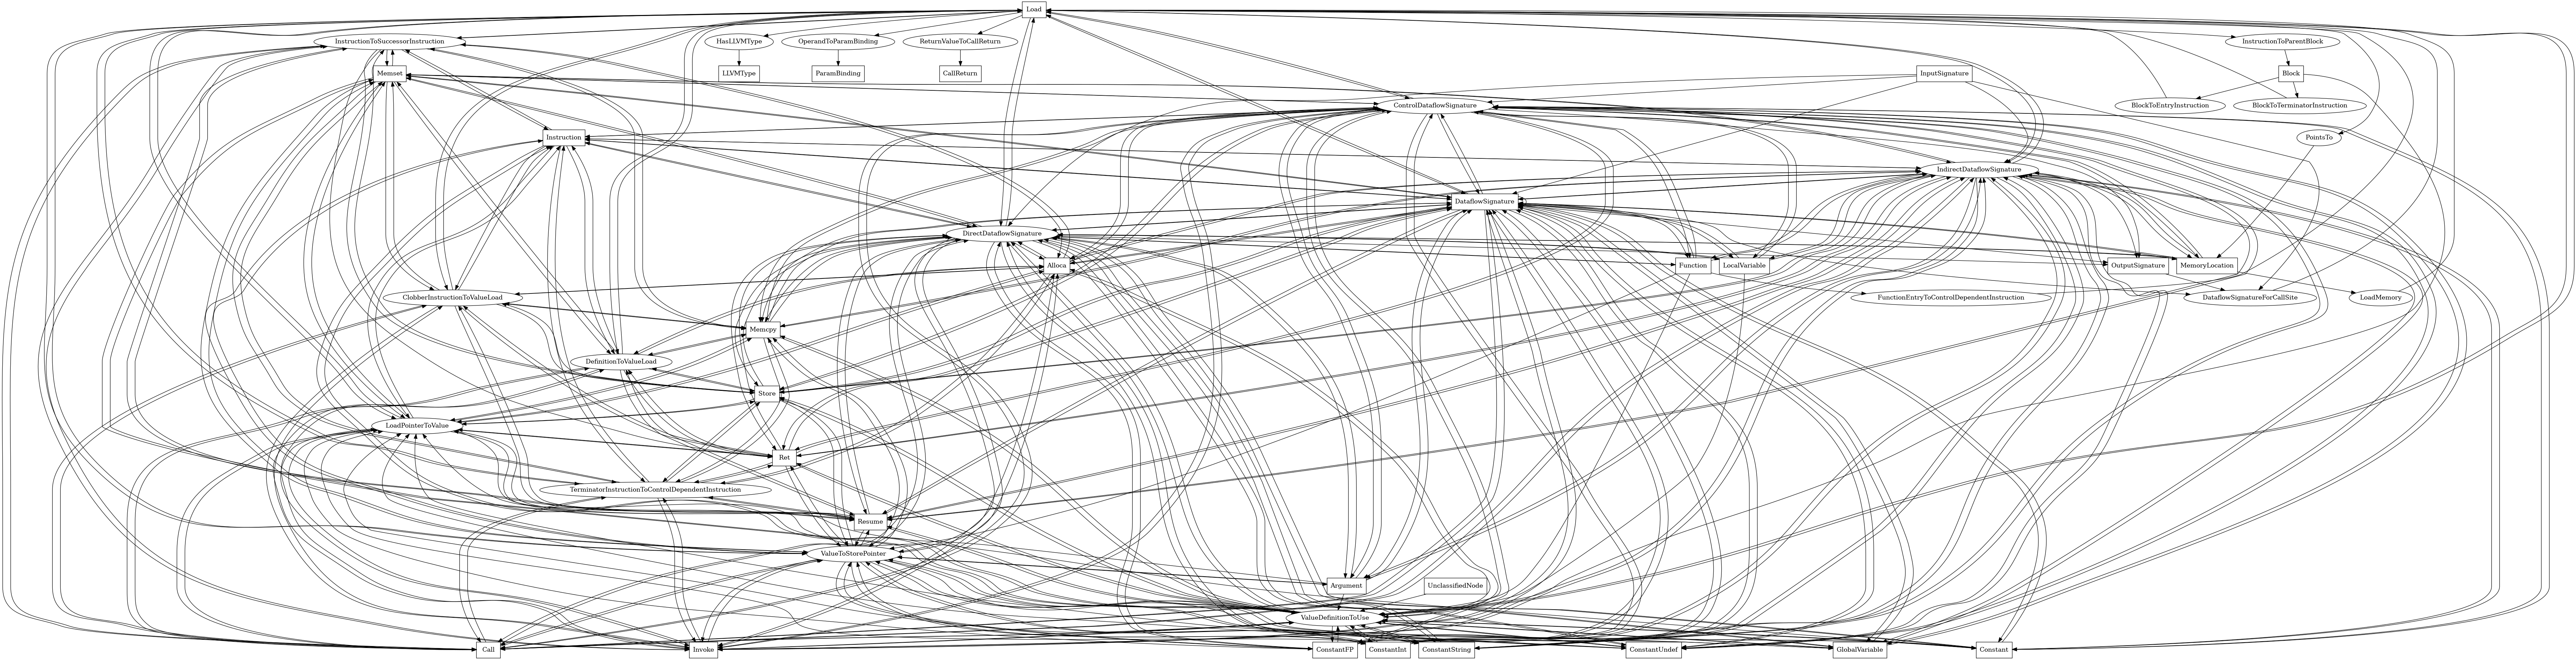 Entity-relationship diagram for Load nodes